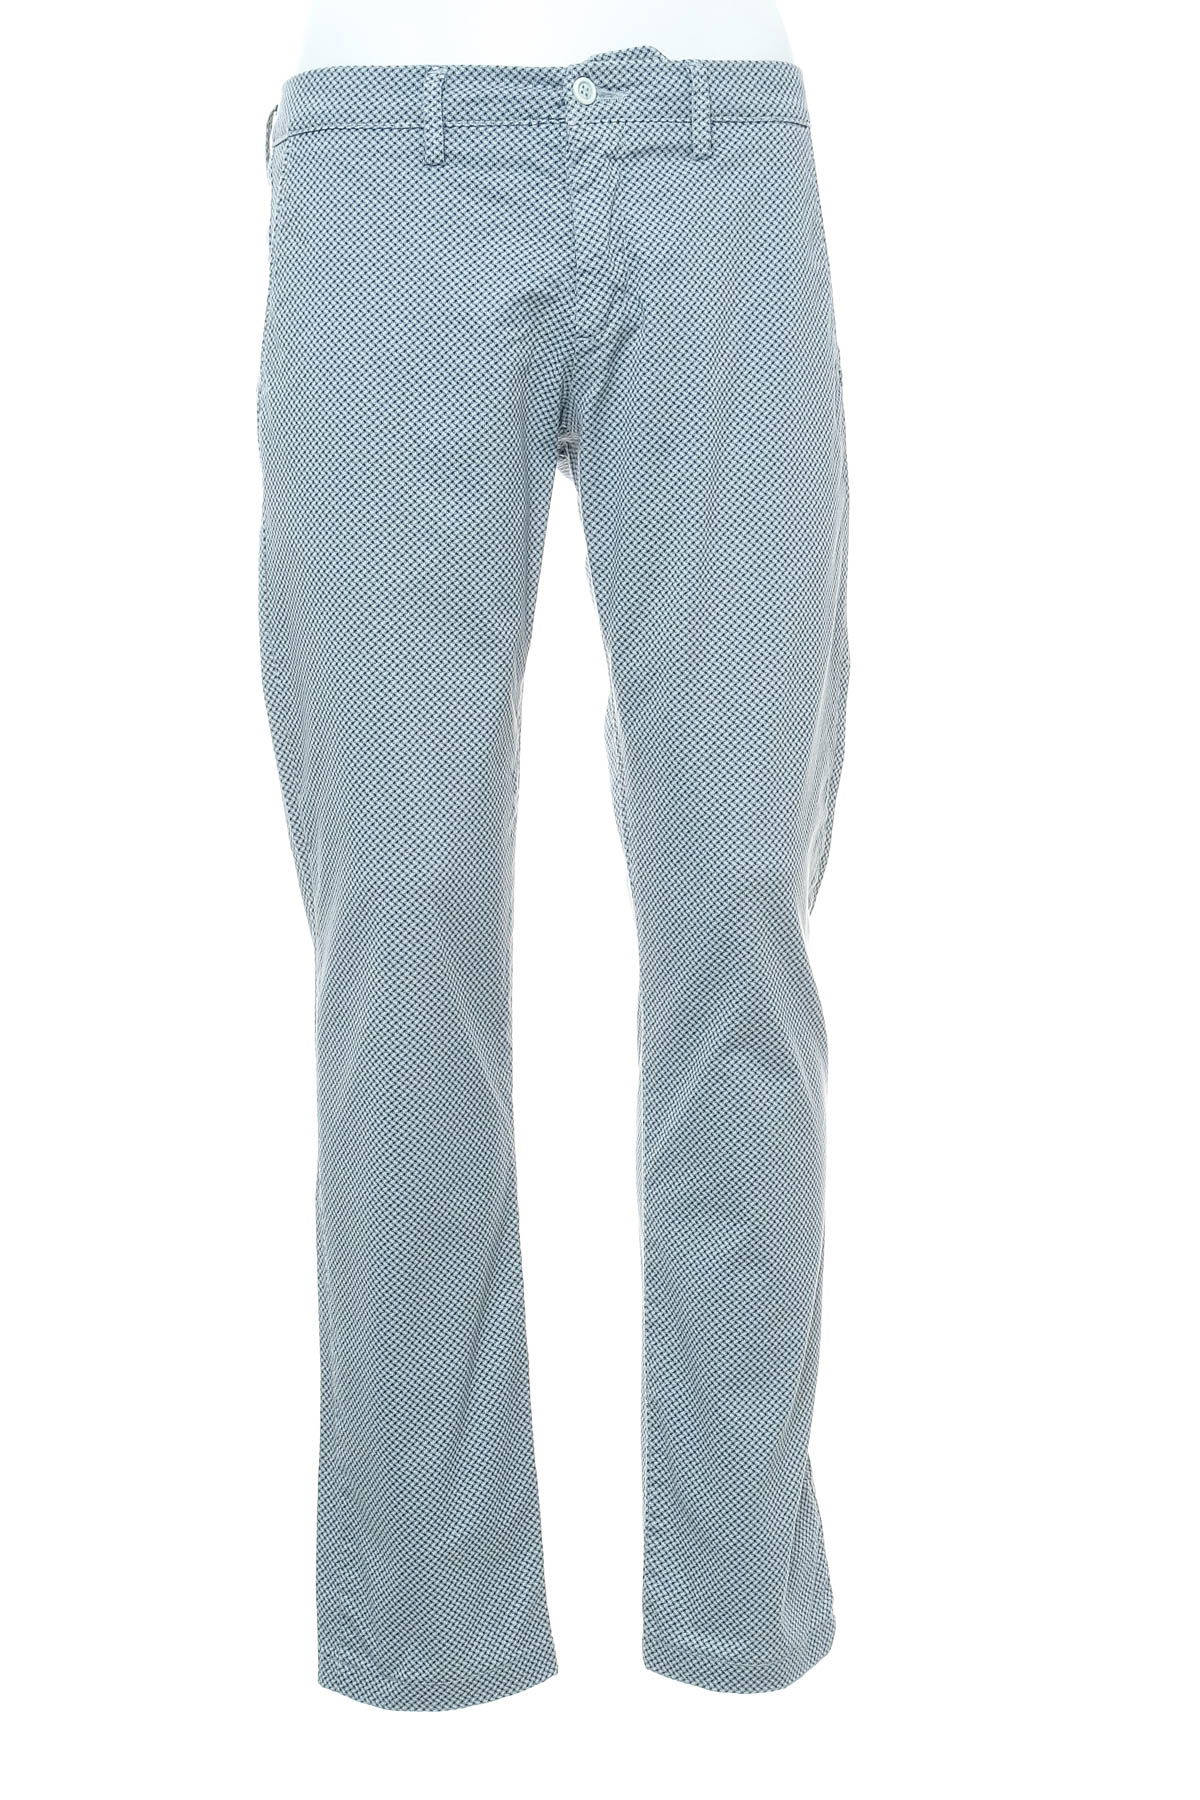 Pantalon pentru bărbați - SARTORIA LEONI - 0